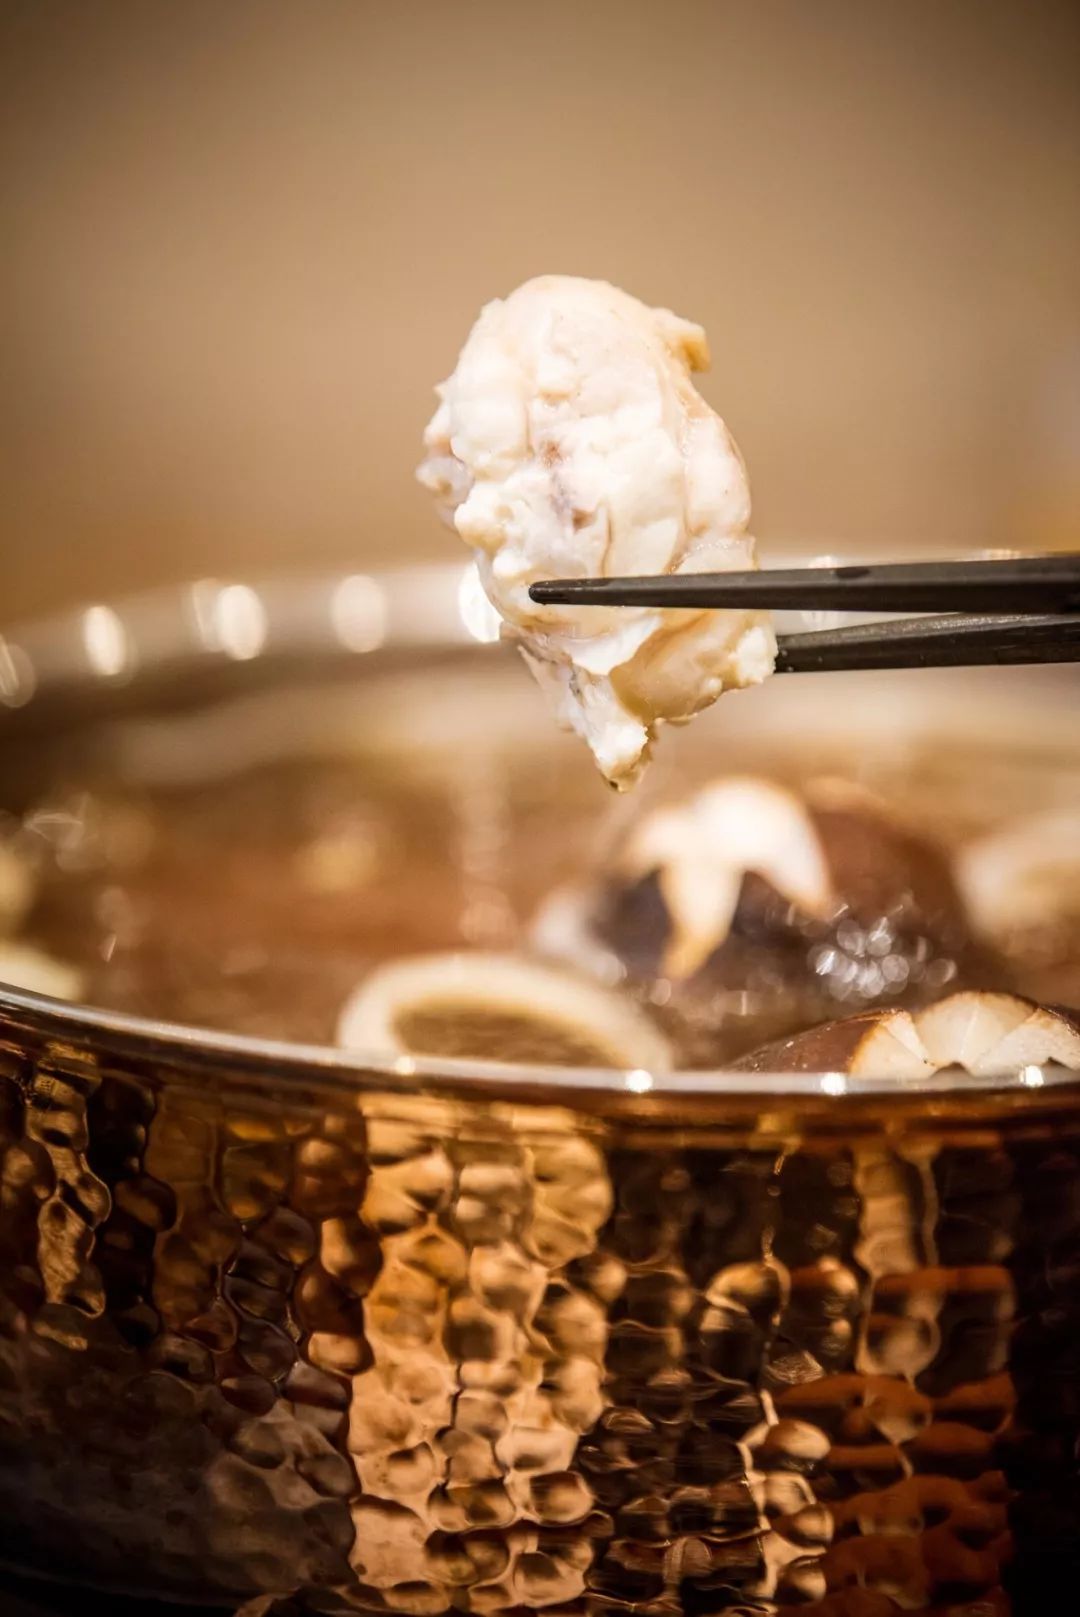 河豚鱼火锅搭配的是昆布汤底,口味相对比较清淡